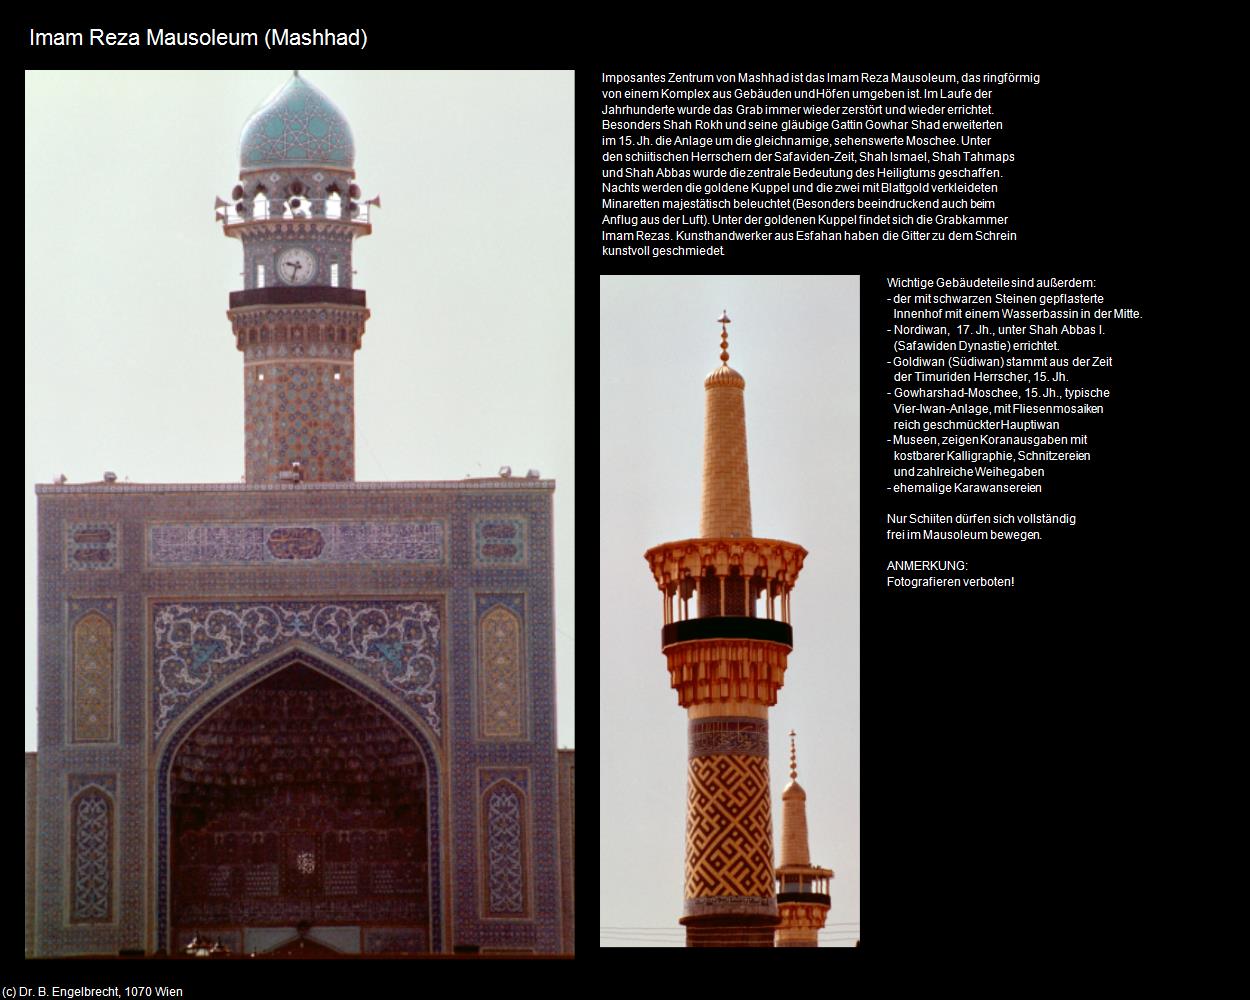 Imam Reza Mausoleum (Mashhad) in Iran